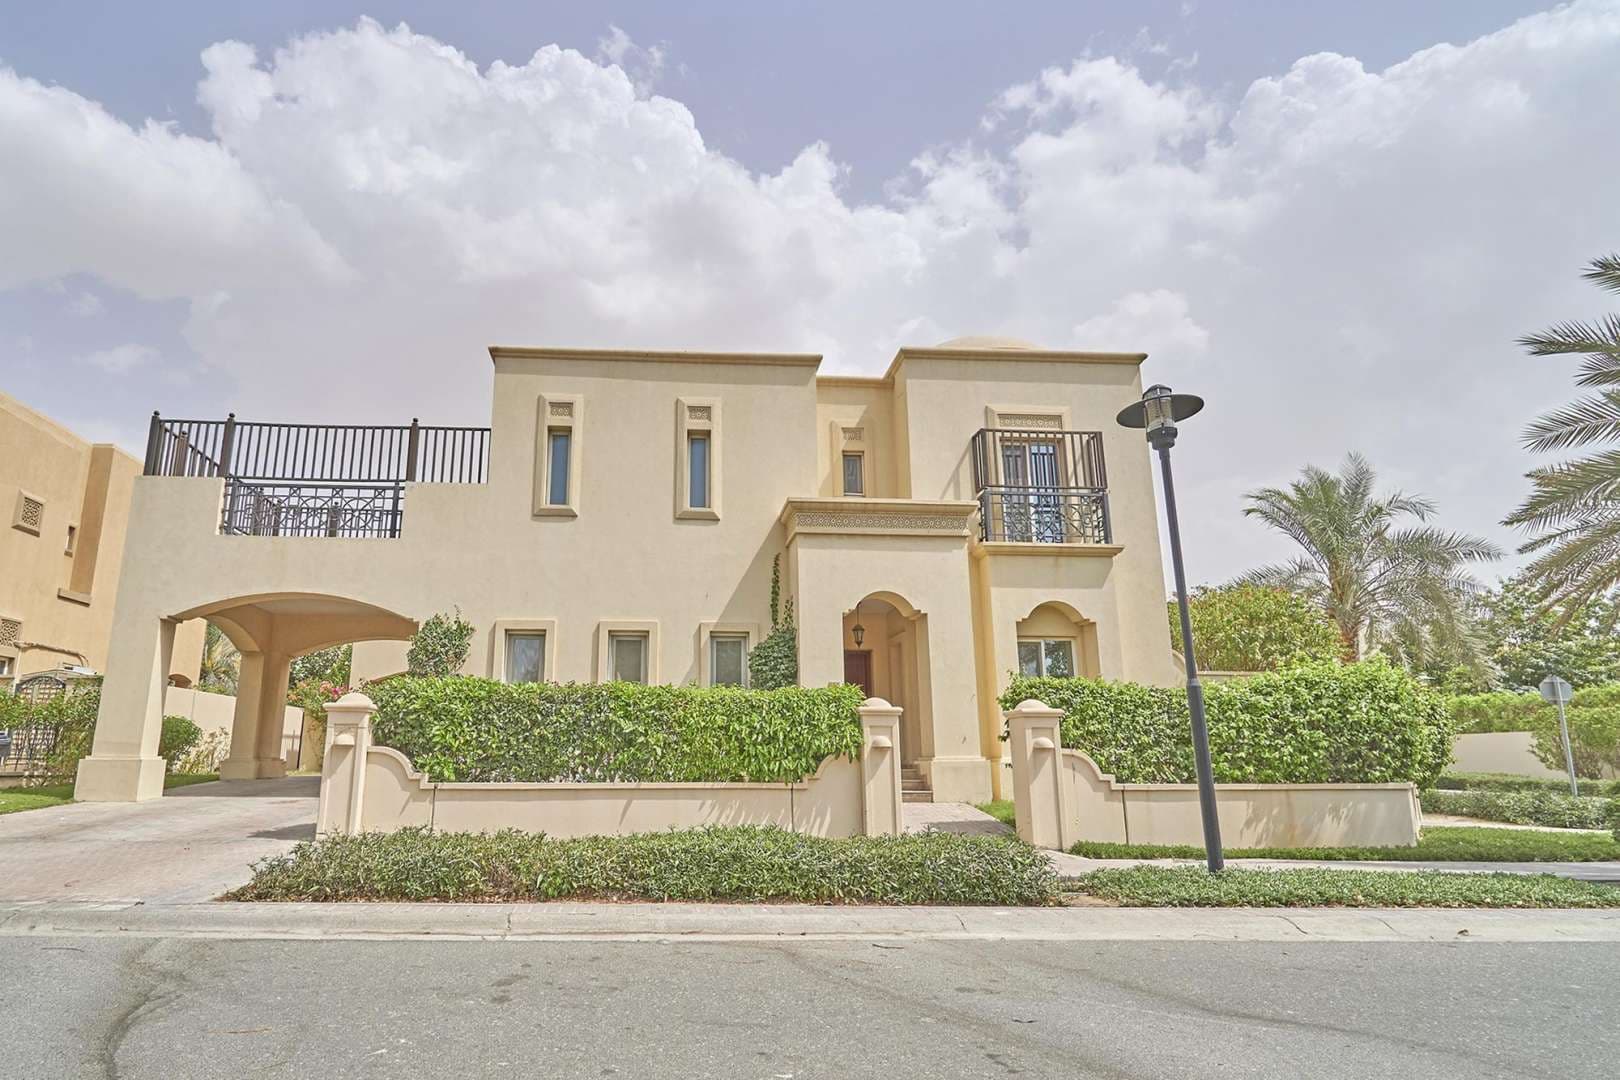 6 Bedroom Villa For Rent Al Mahra Lp07831 12ed1c224bb38300.jpg